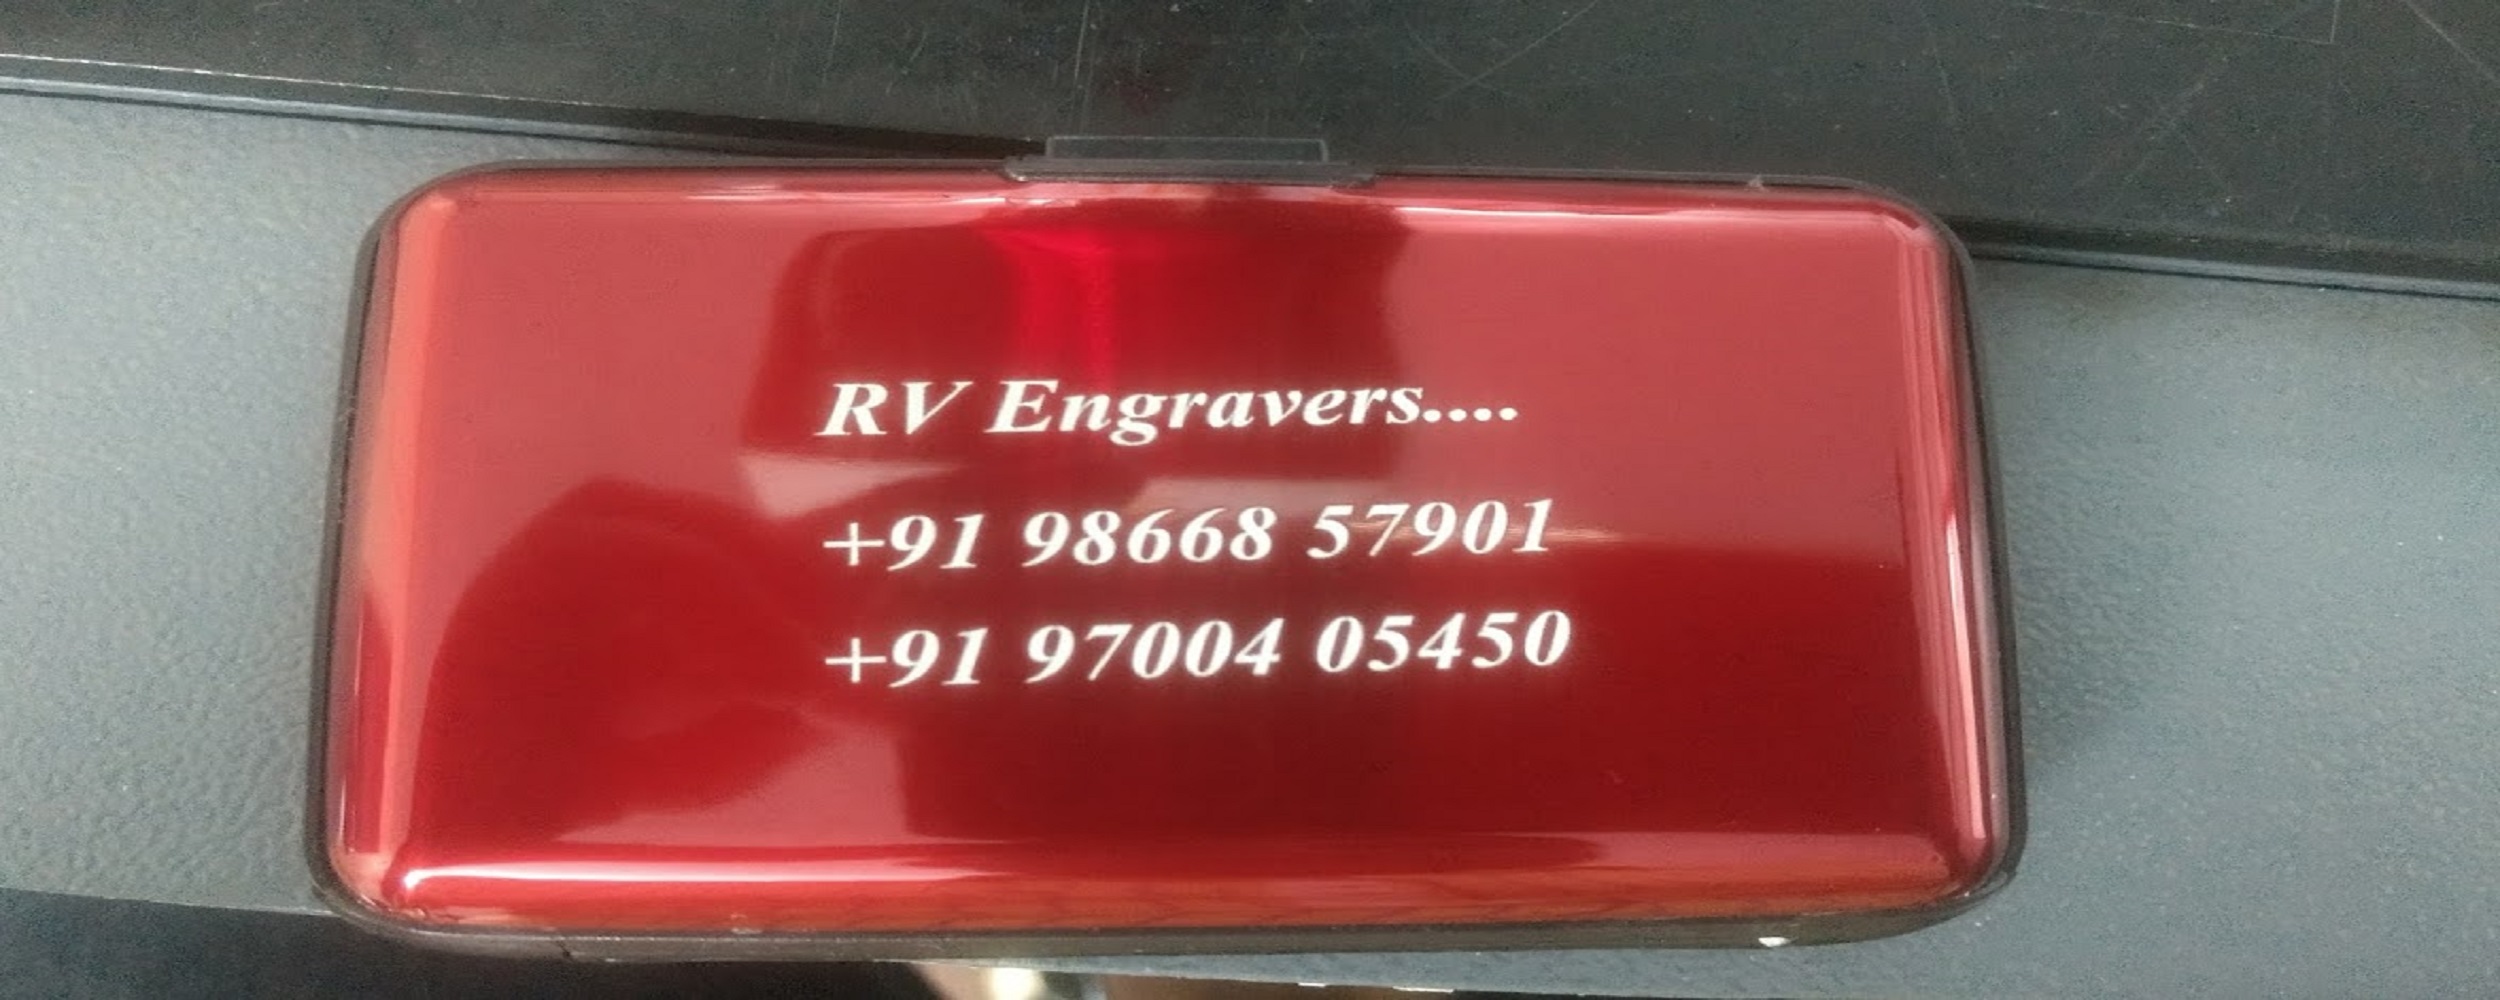 RV Engravers